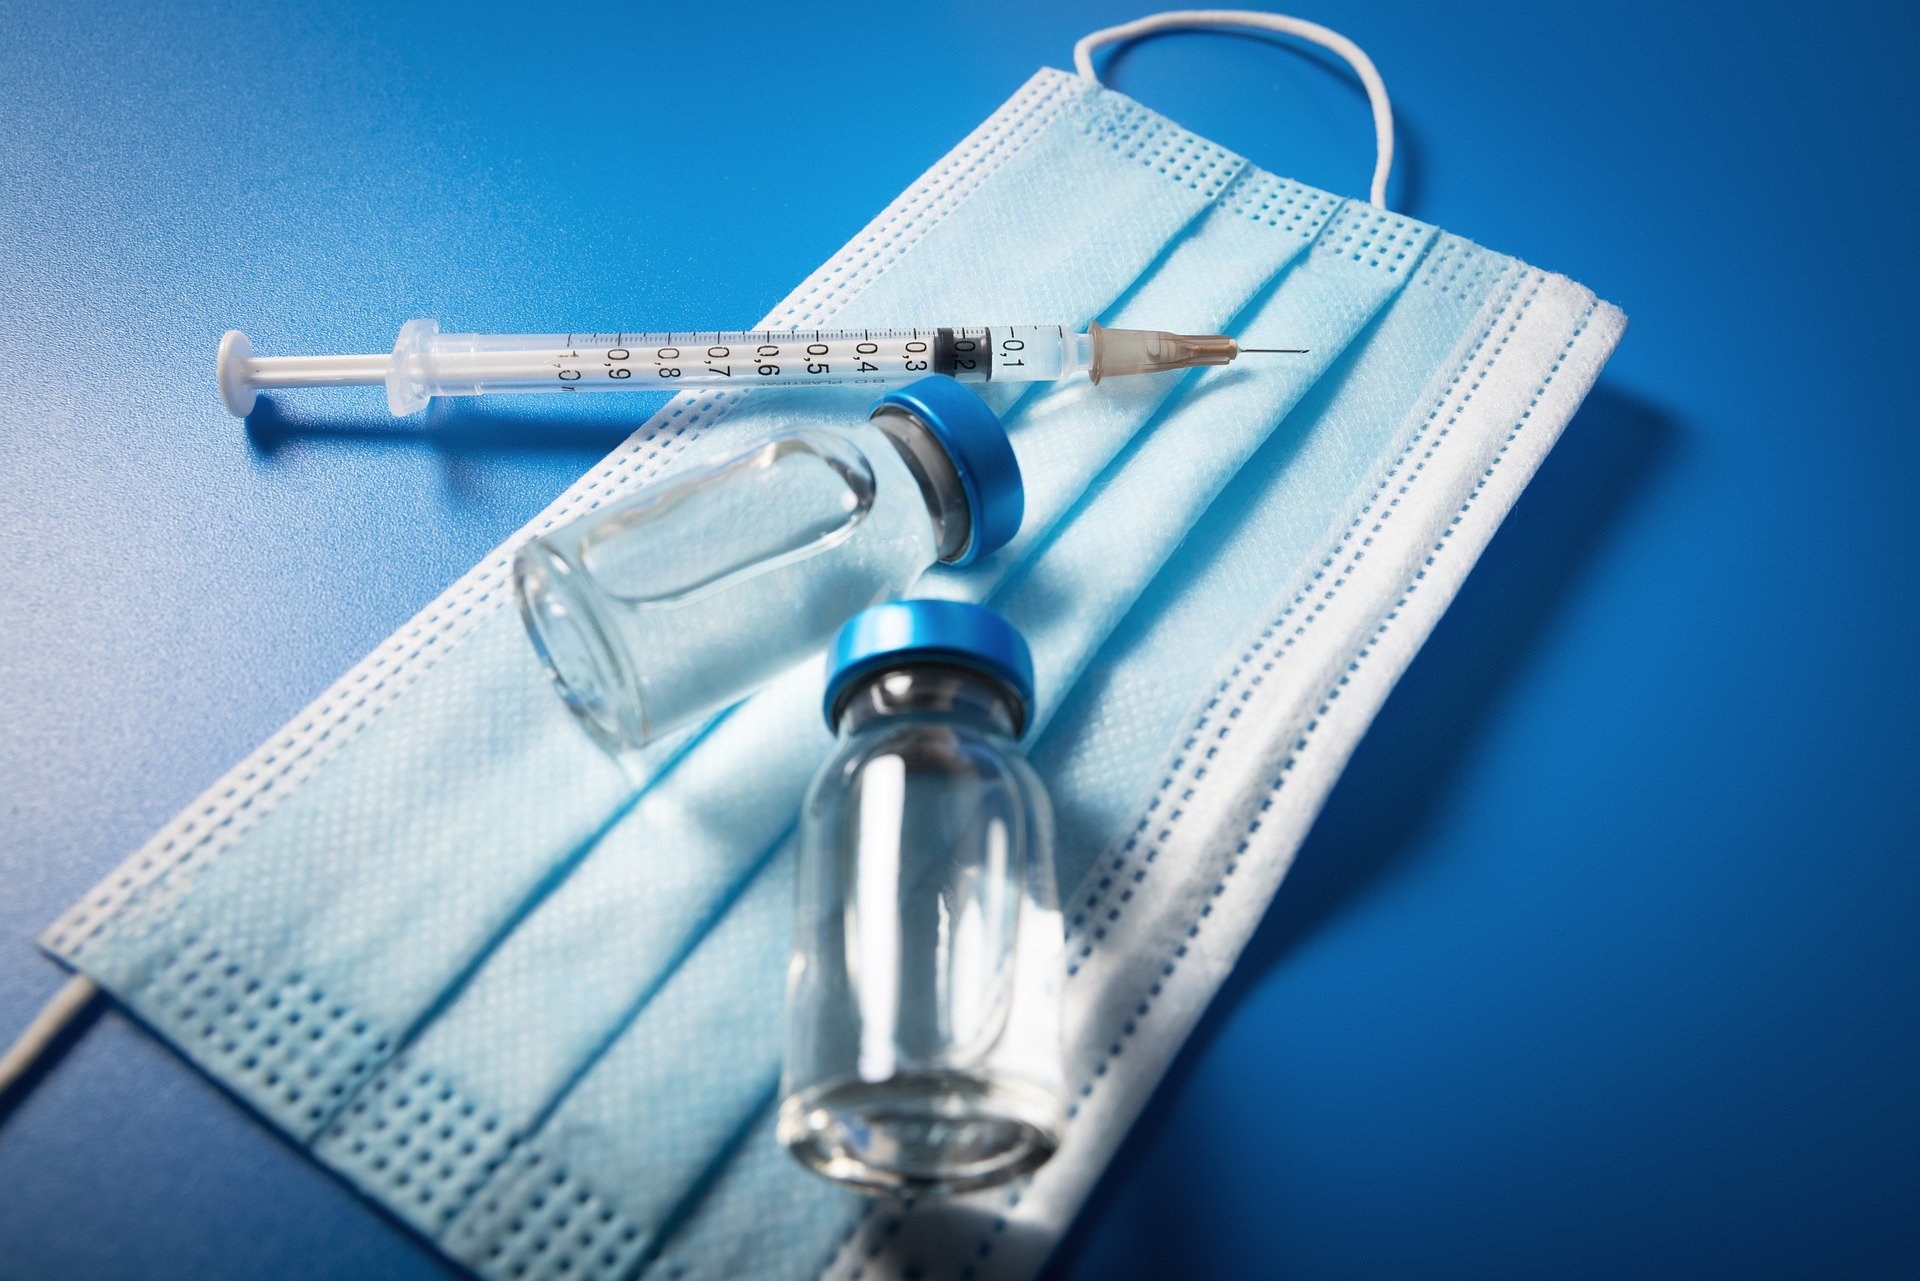 Trung tâm chỉ huy tuyên bố, từ ngày 25/11 có thể tiếp nhận tiêm vắc xin ở các cơ sở y tế, bệnh viện chỉ định. (Nguồn ảnh: Pixabay)